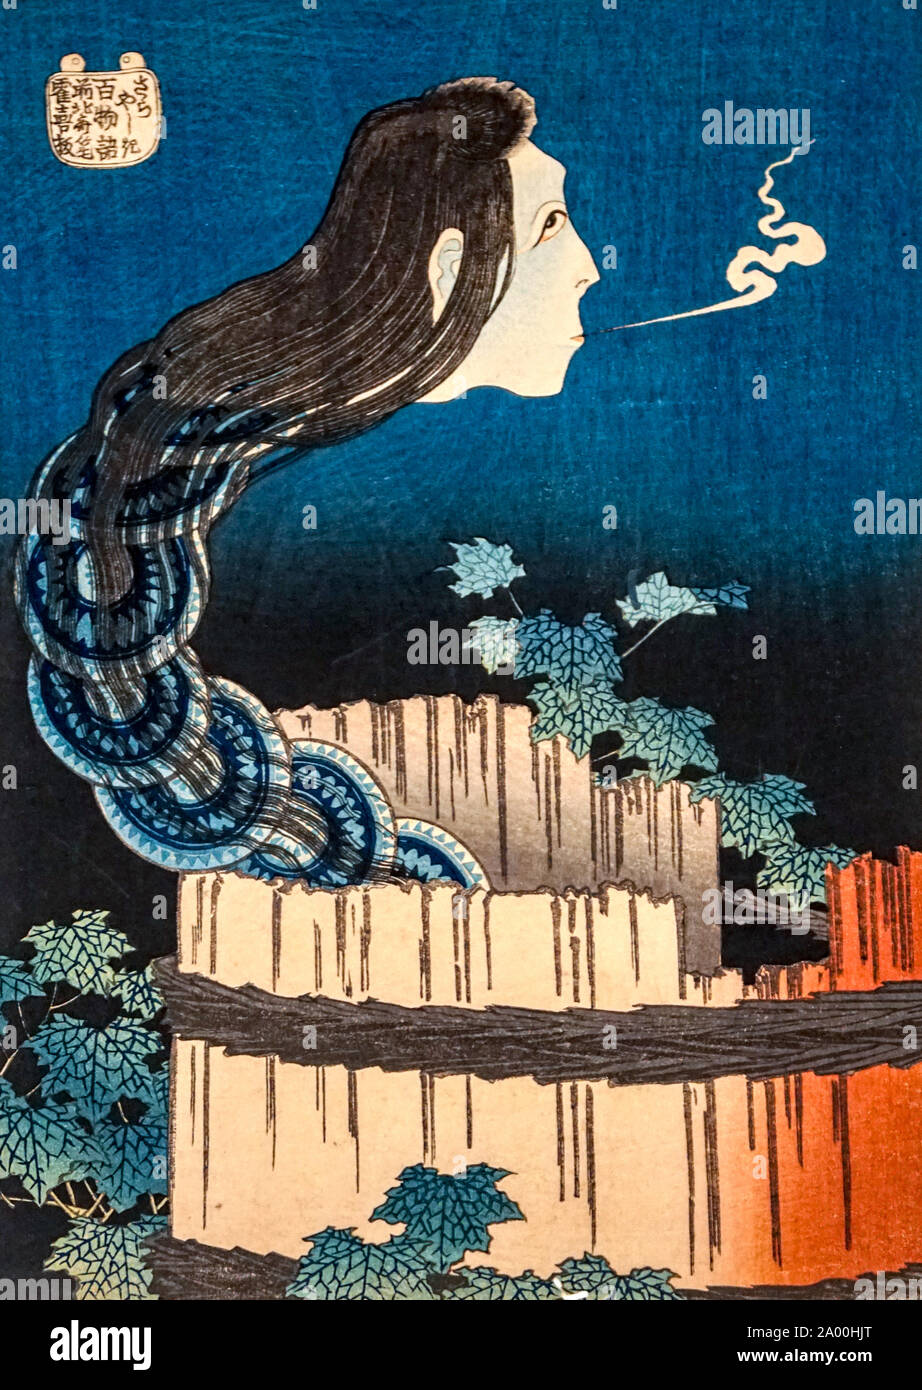 Le fantôme de la vaisselle, de la série des histoires de fantômes, une centaine par Katsushika Hokusai, gravure sur bois, période Edo, 19e siècle Banque D'Images